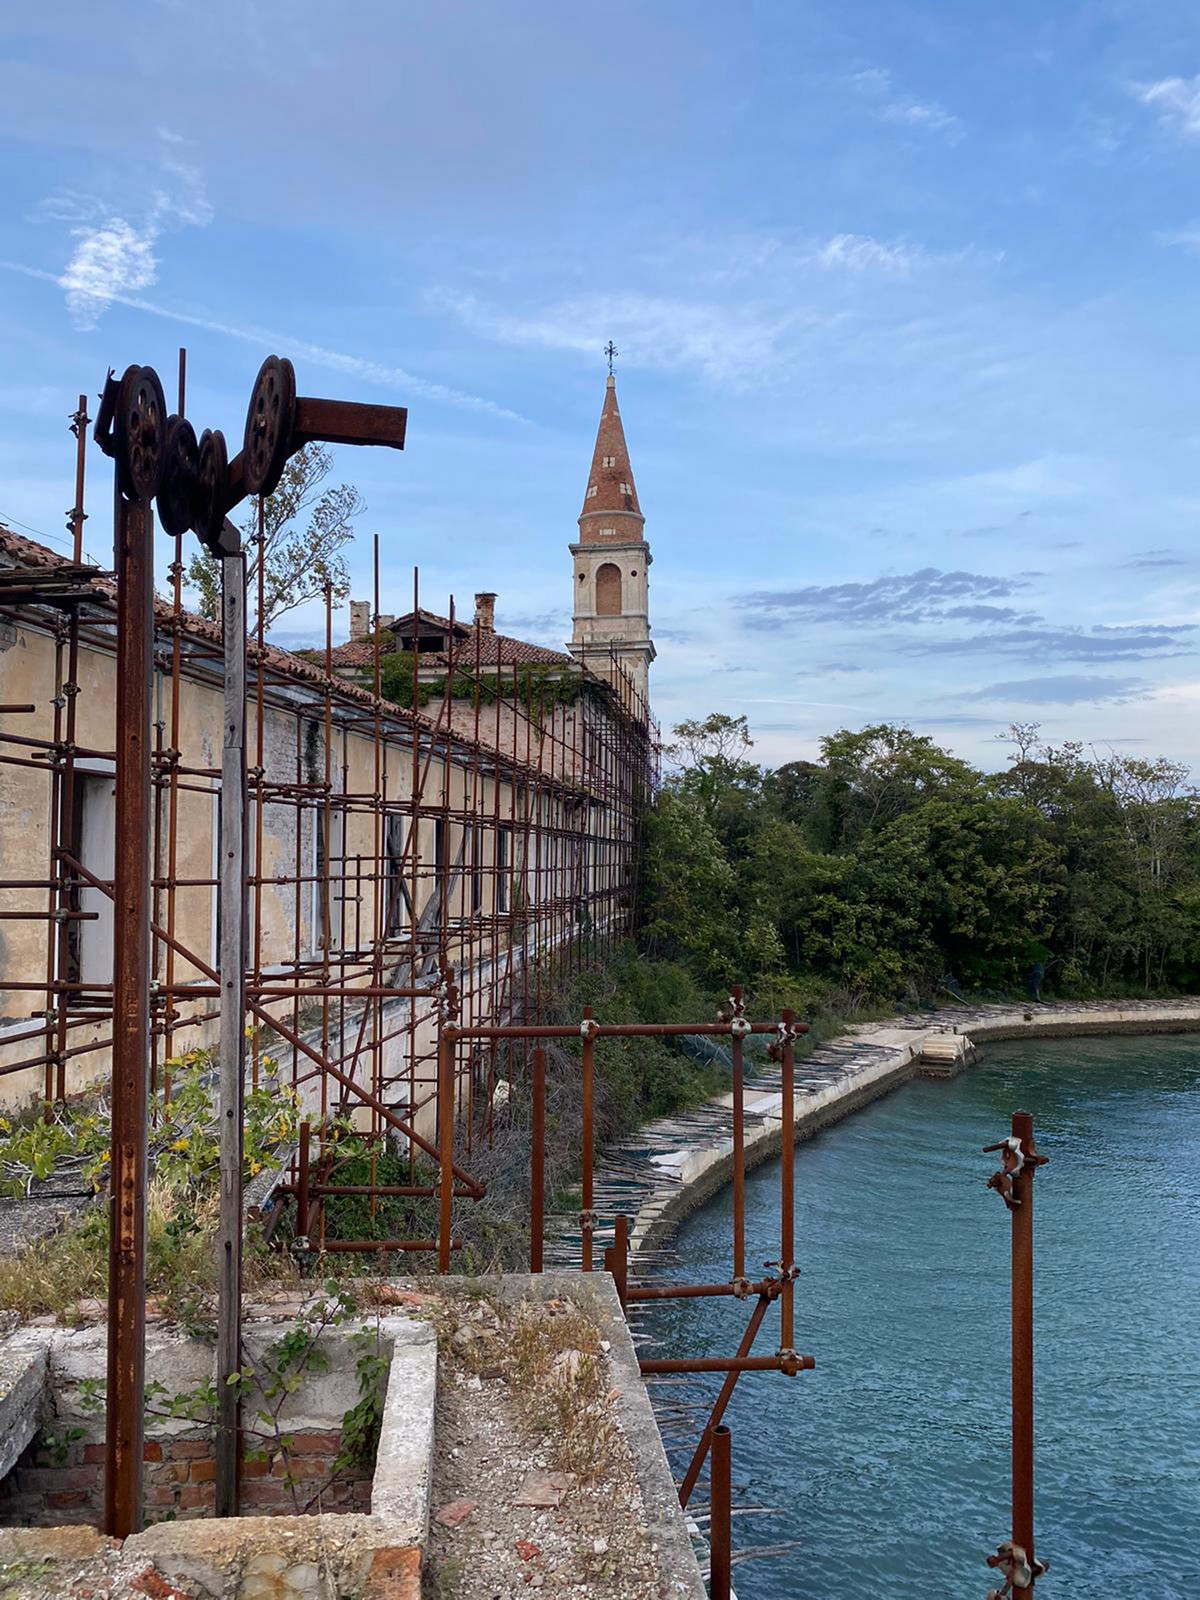 Жуткий итальянский остров с массовыми захоронениями и чумными ямами